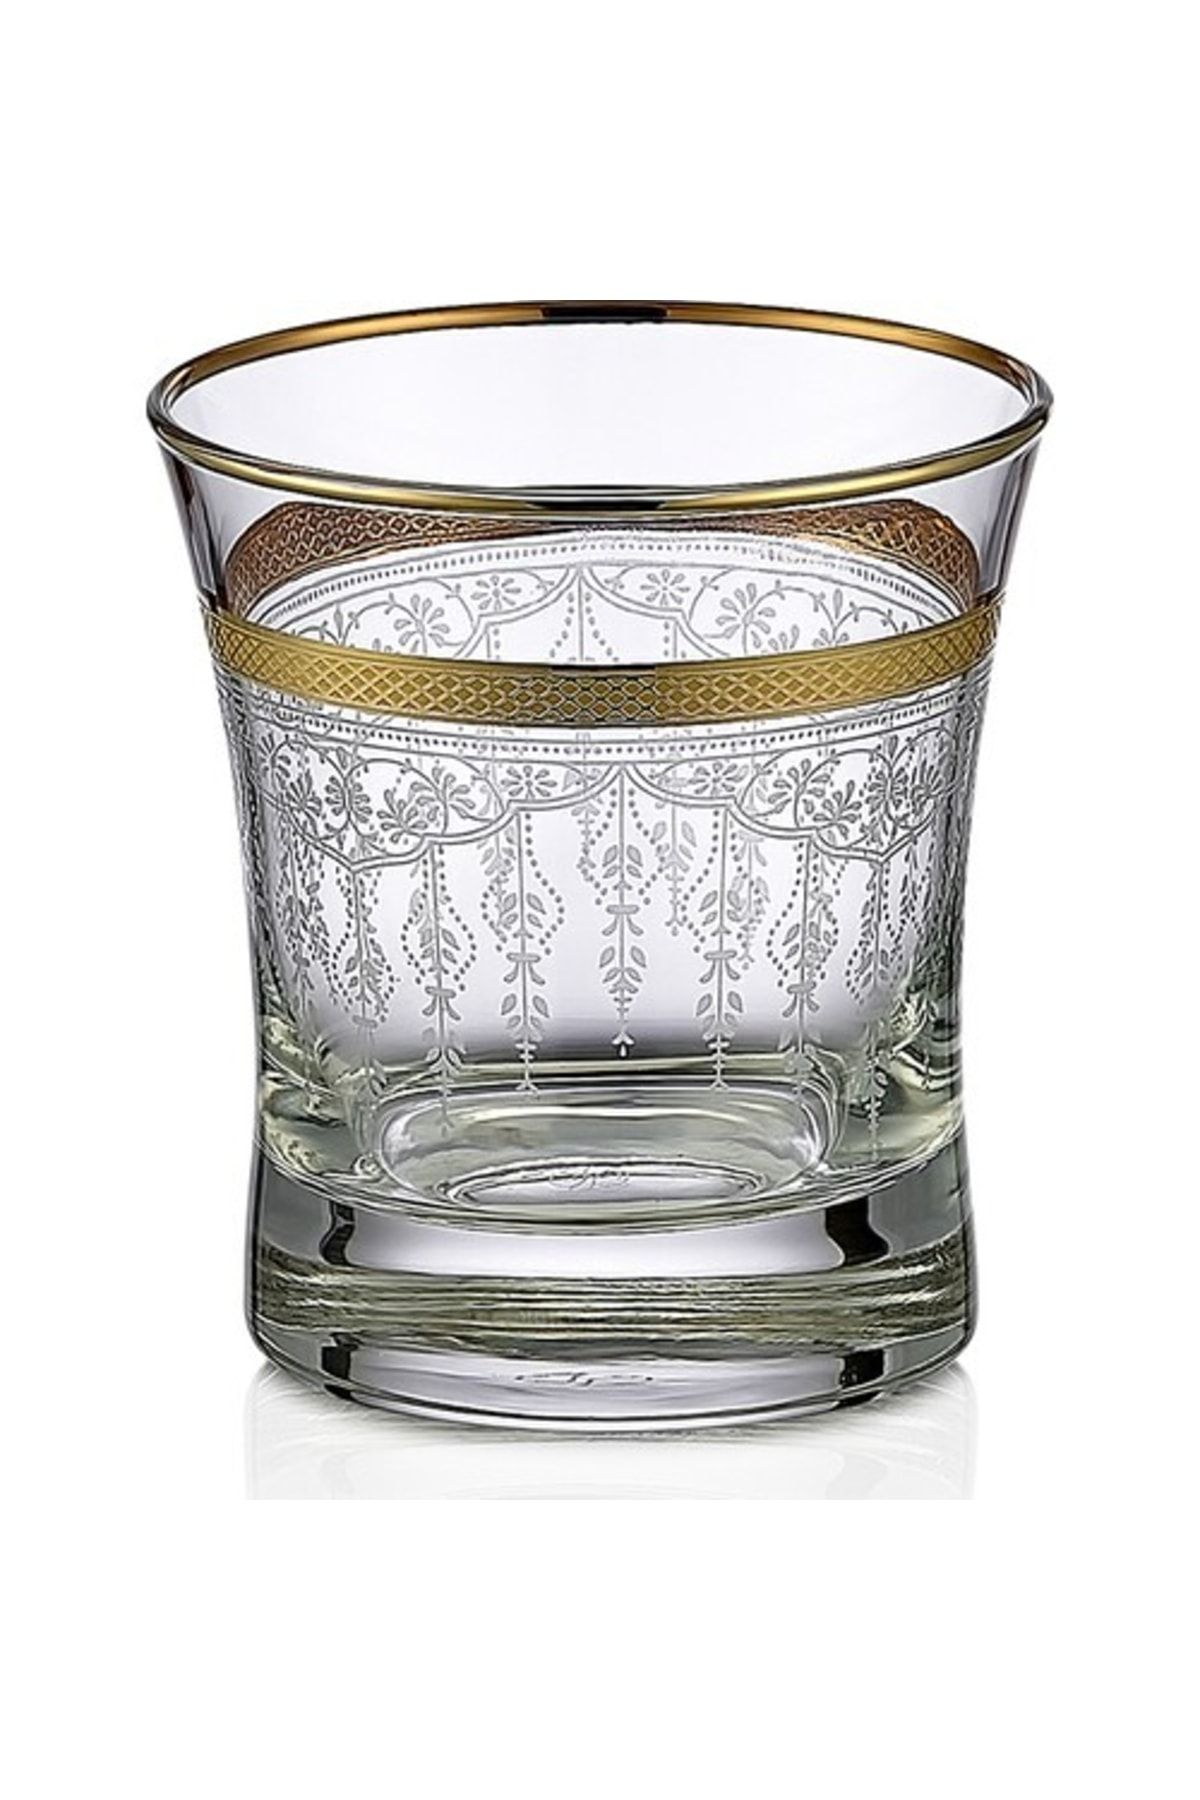 KCD Efruz Altın Kesme El Dekor Yaldızlı 6 Adet Desenli Su Bardağı Takımı